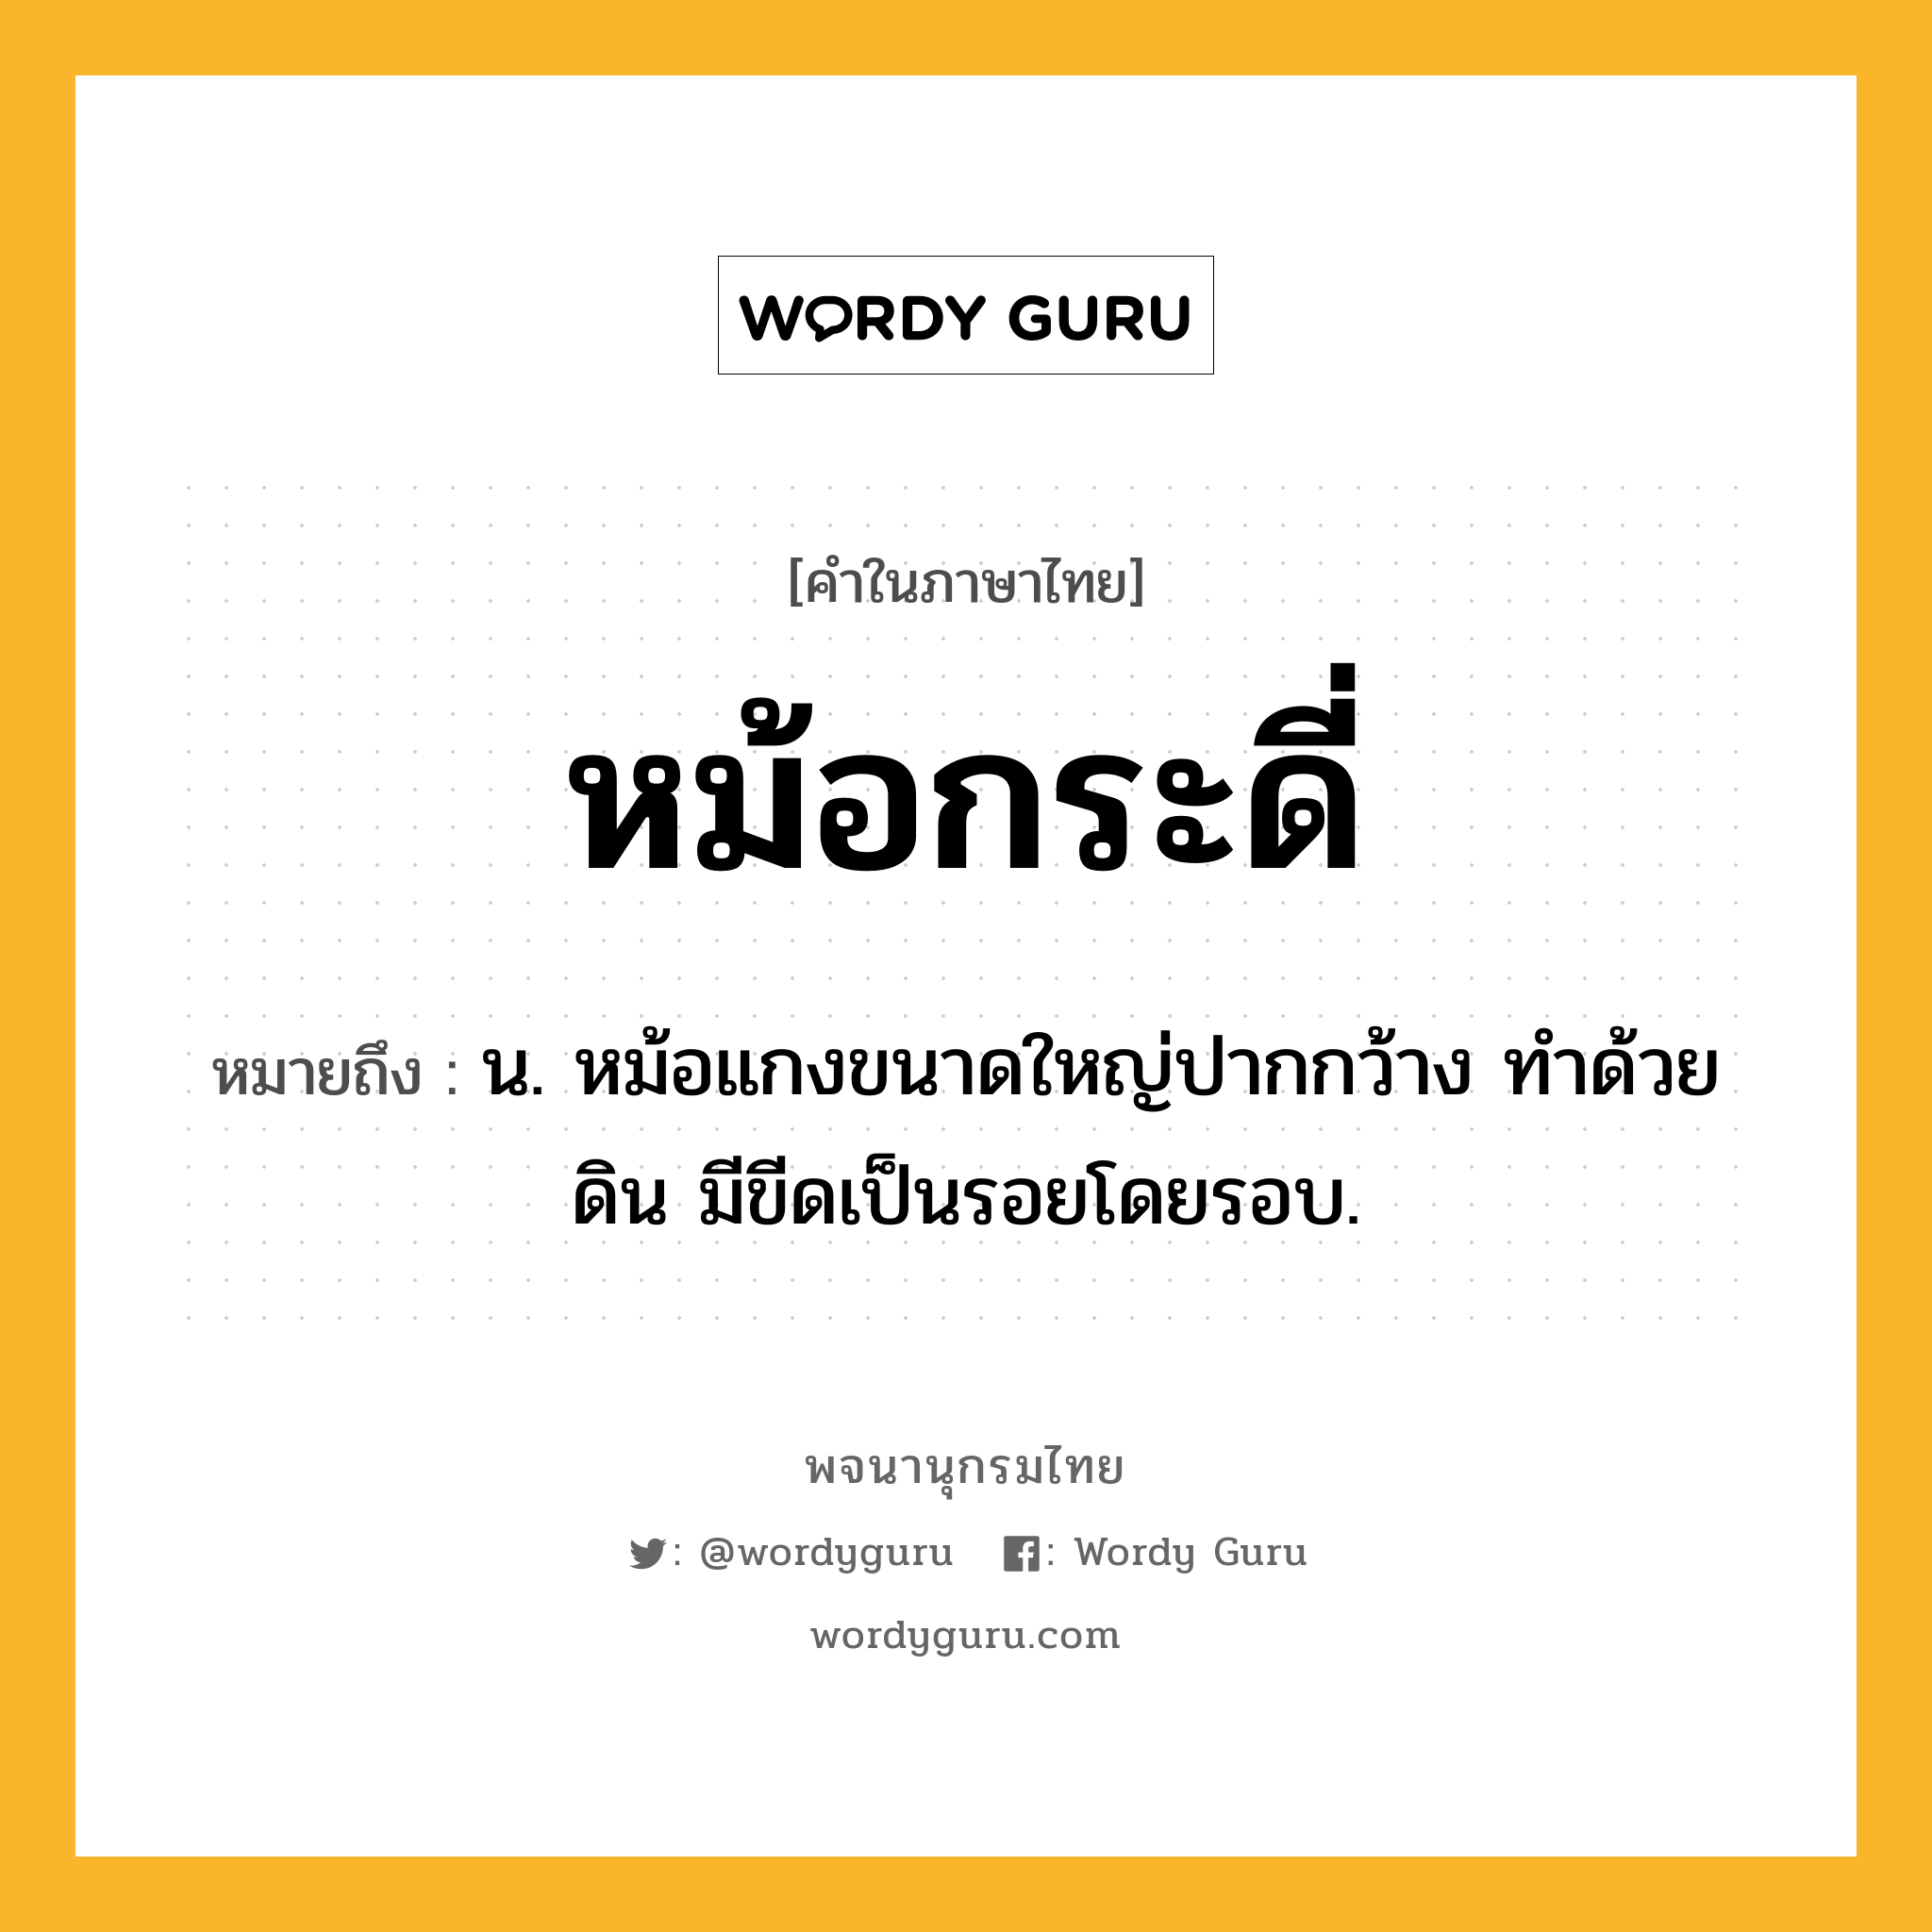 หม้อกระดี่ ความหมาย หมายถึงอะไร?, คำในภาษาไทย หม้อกระดี่ หมายถึง น. หม้อแกงขนาดใหญ่ปากกว้าง ทำด้วยดิน มีขีดเป็นรอยโดยรอบ.